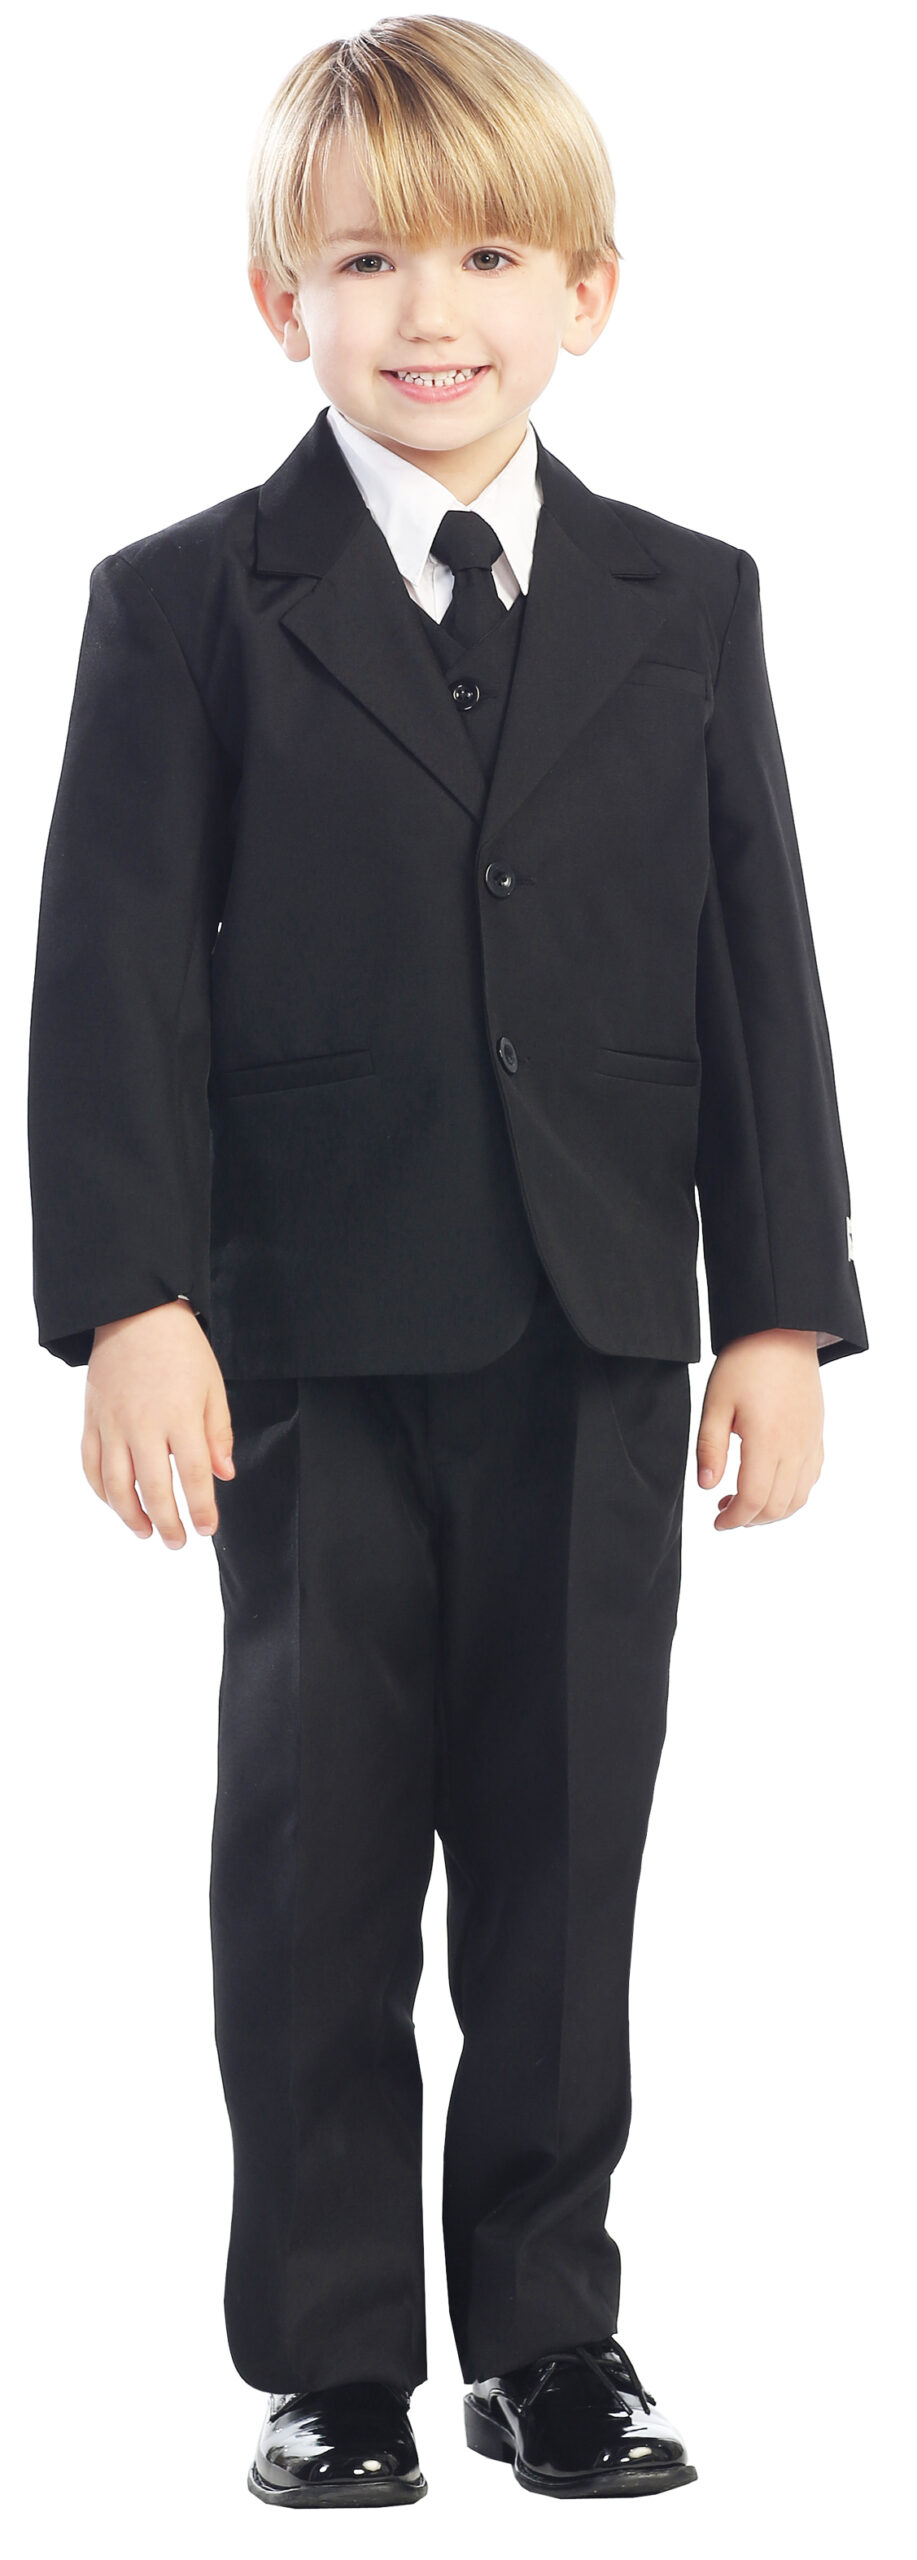 Avery Hill 5-Piece Boy's 2-Button Dress Suit Full-Back Vest - Black Size 10